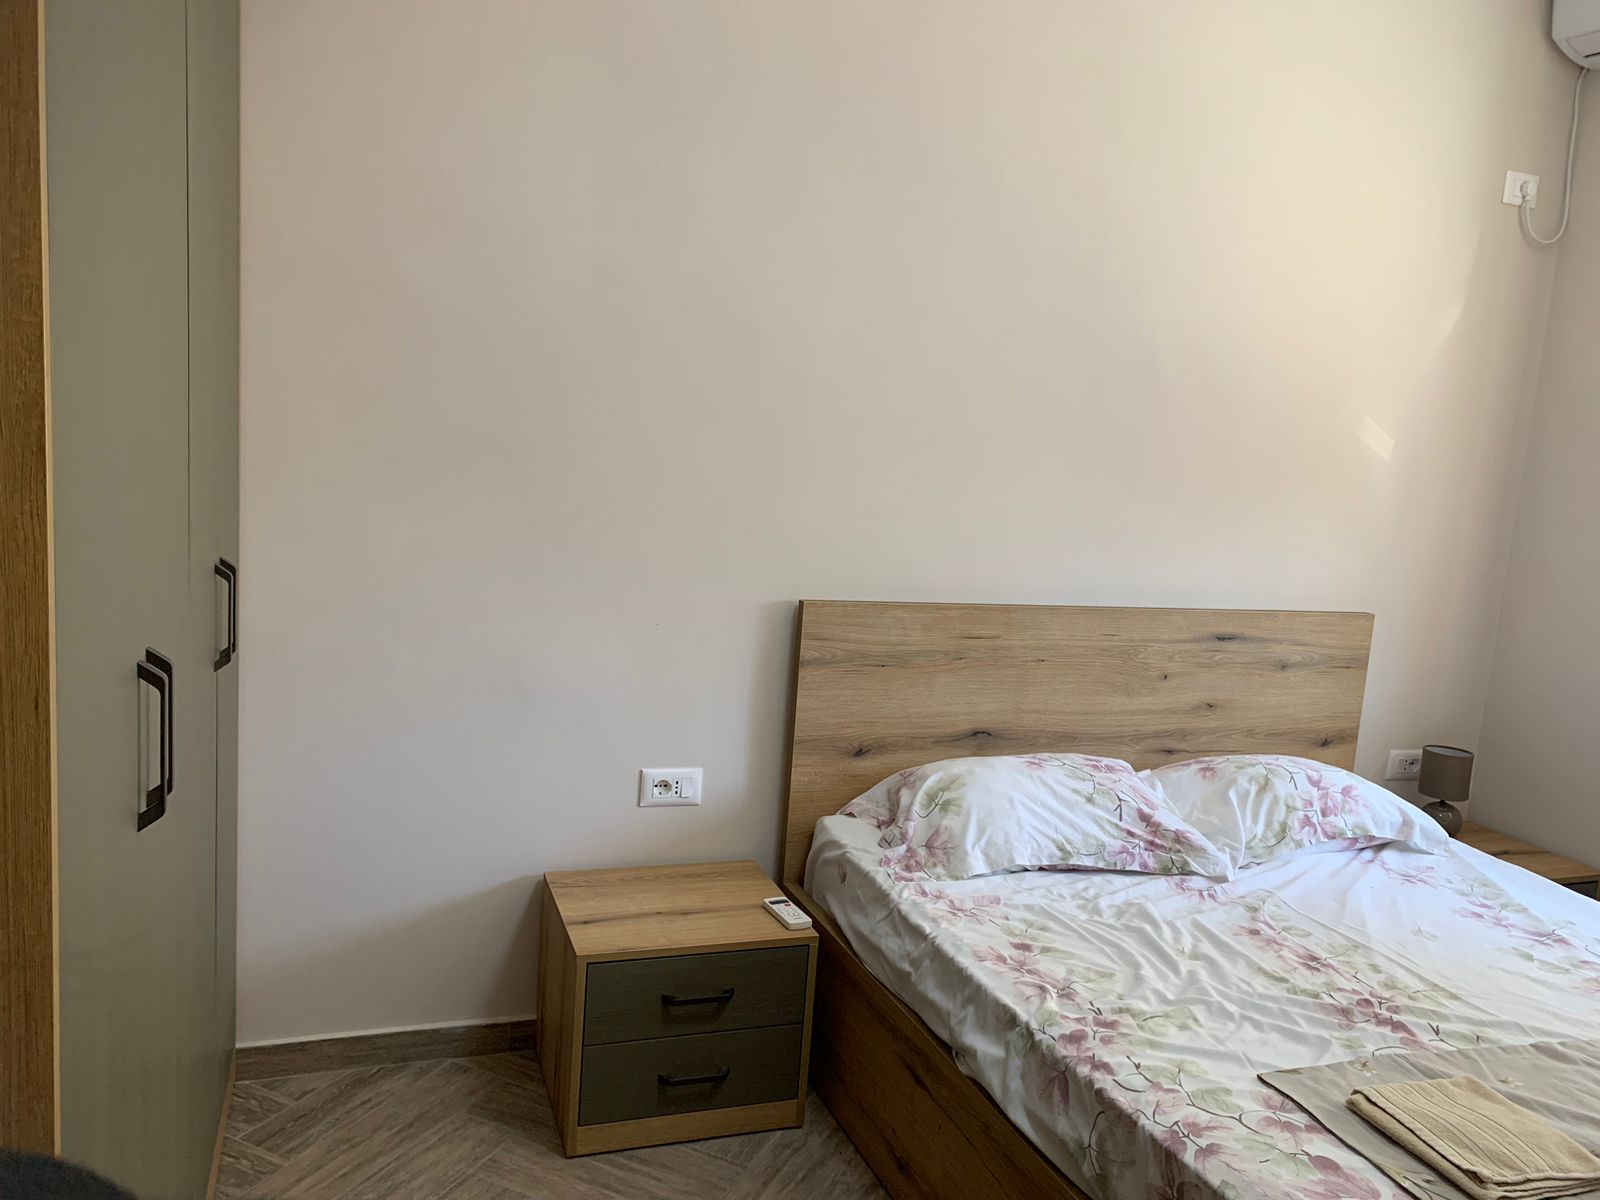 Foto e Apartment në shitje Rruga e Durresit, Tiranë